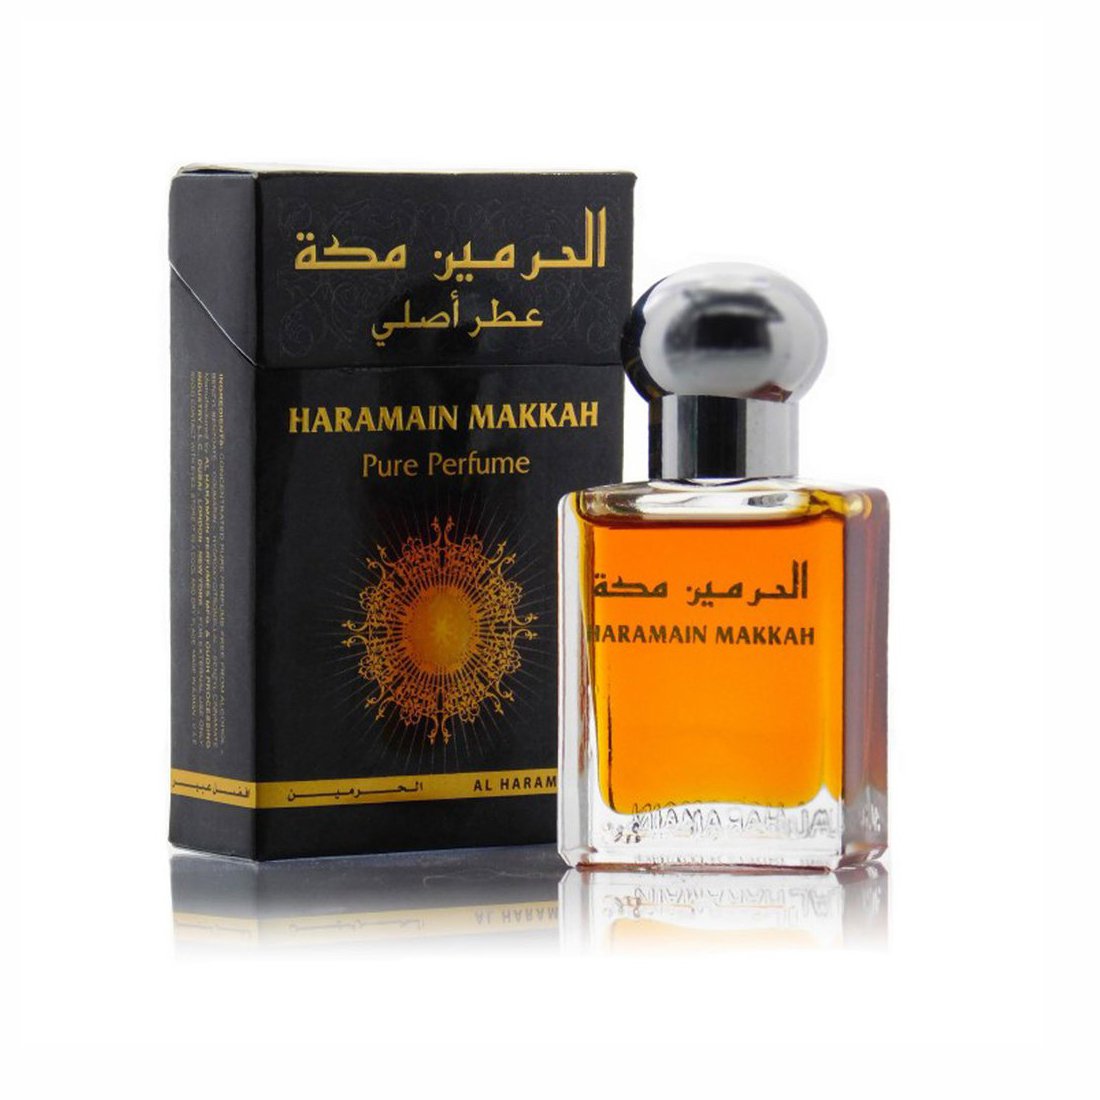 Al Haramain Makkah & Hajar Fragrance Pure Original Roll on Perfume Oil Pack of 2 (Attar) - 2 x 15 ml